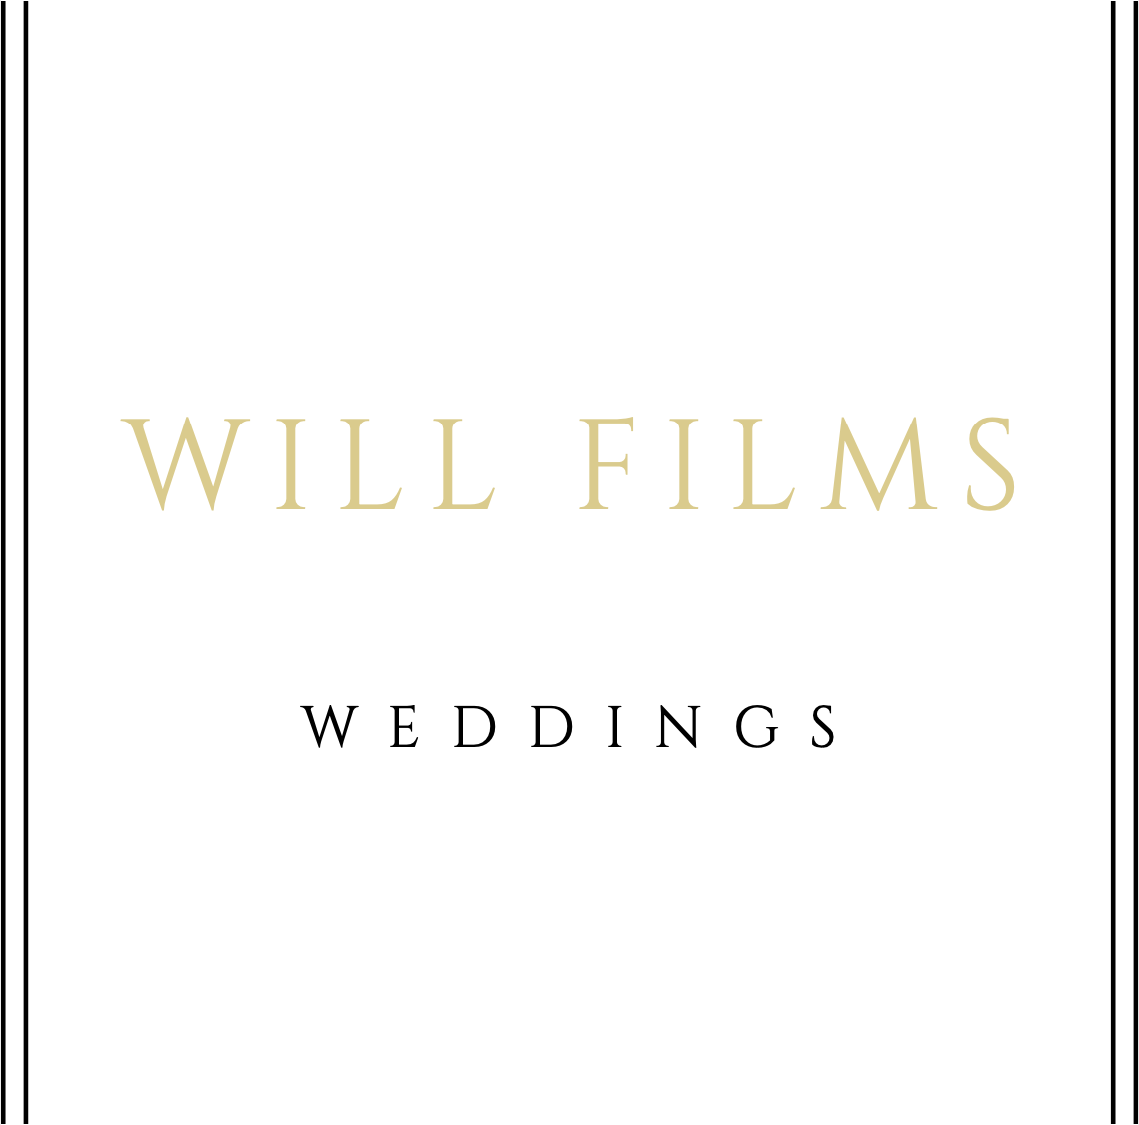 Will Films Weddings